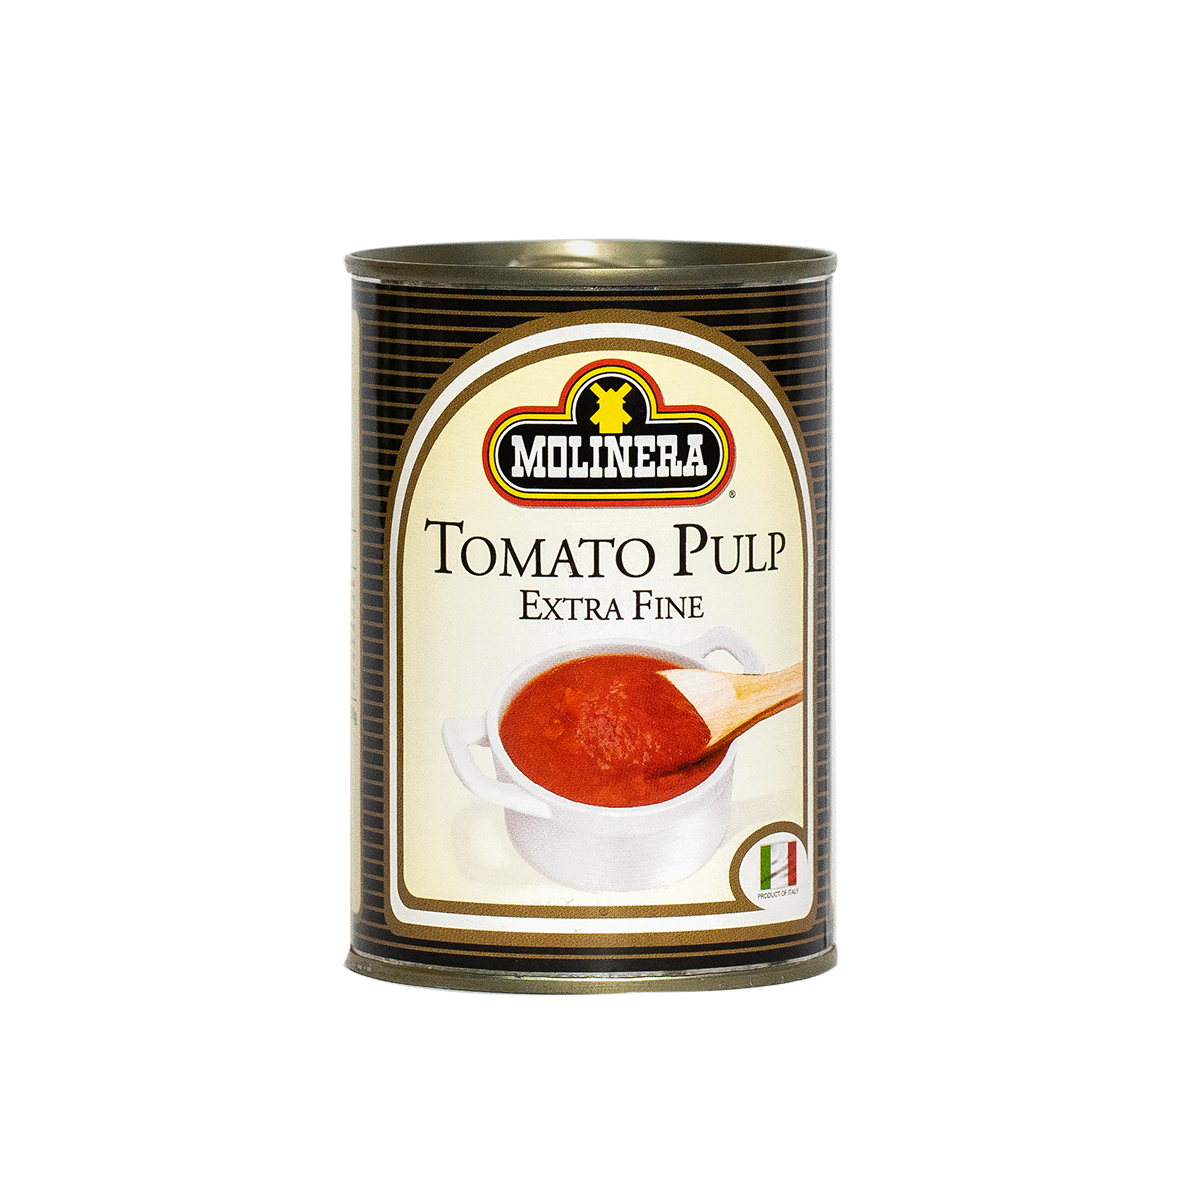 Molinera Tomato Pulp